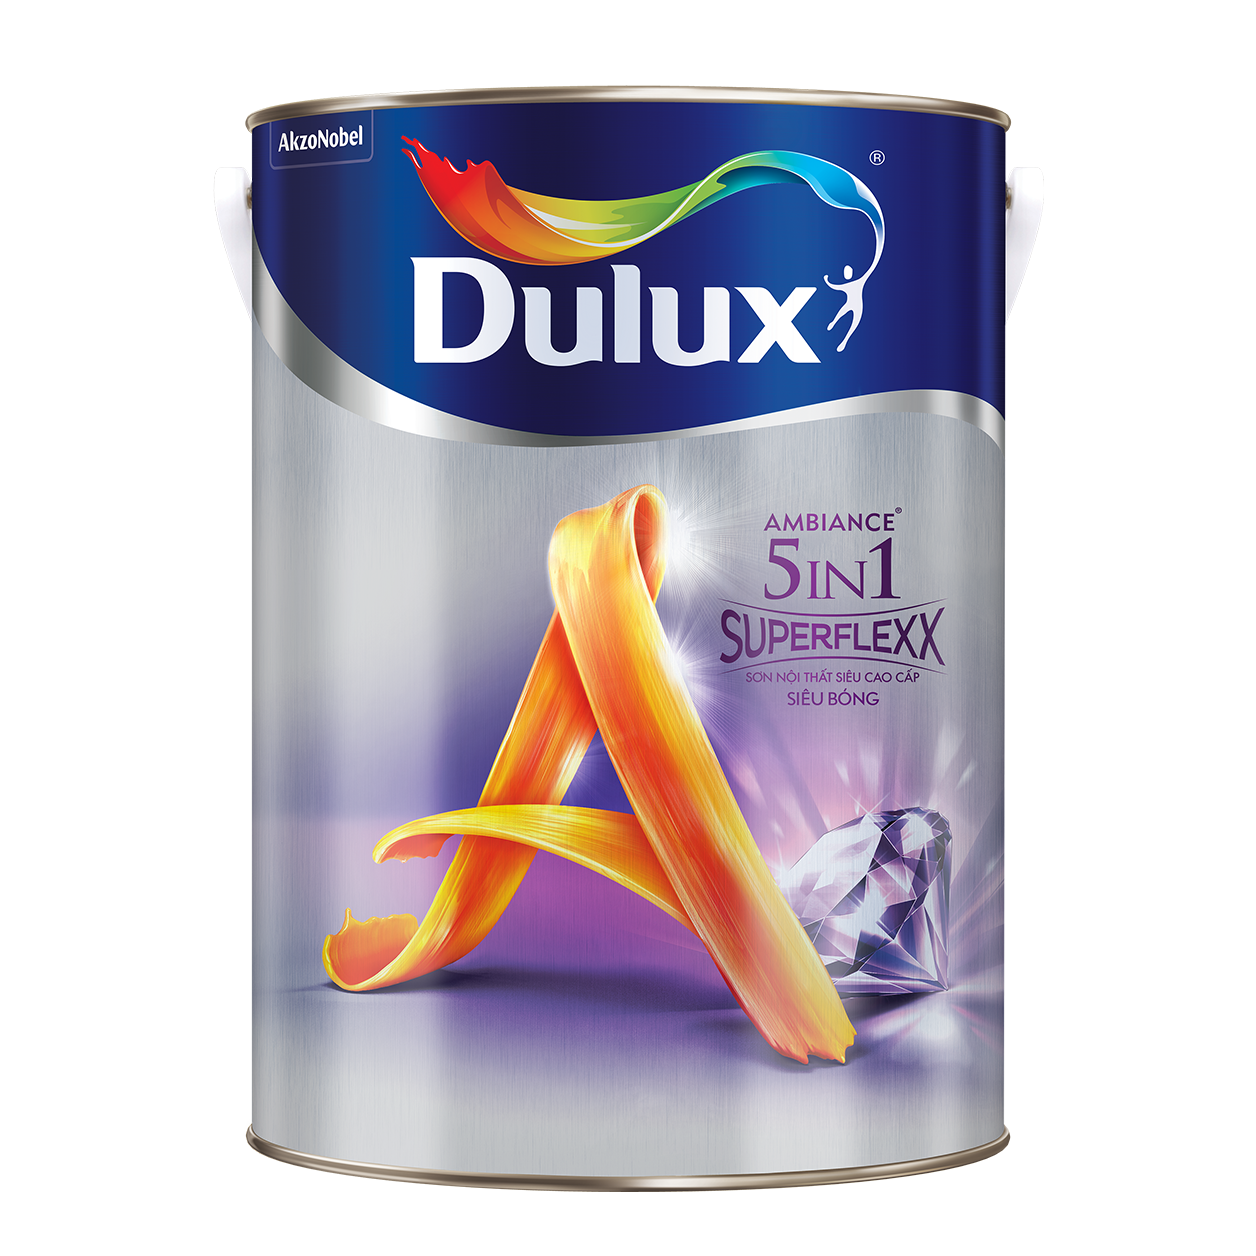 Hướng dẫn cách sử dụng sơn Dulux 5in1 siêu bóng